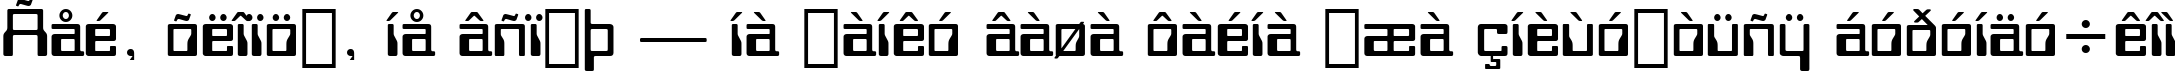 Пример написания шрифтом Orbit-B BT текста на украинском